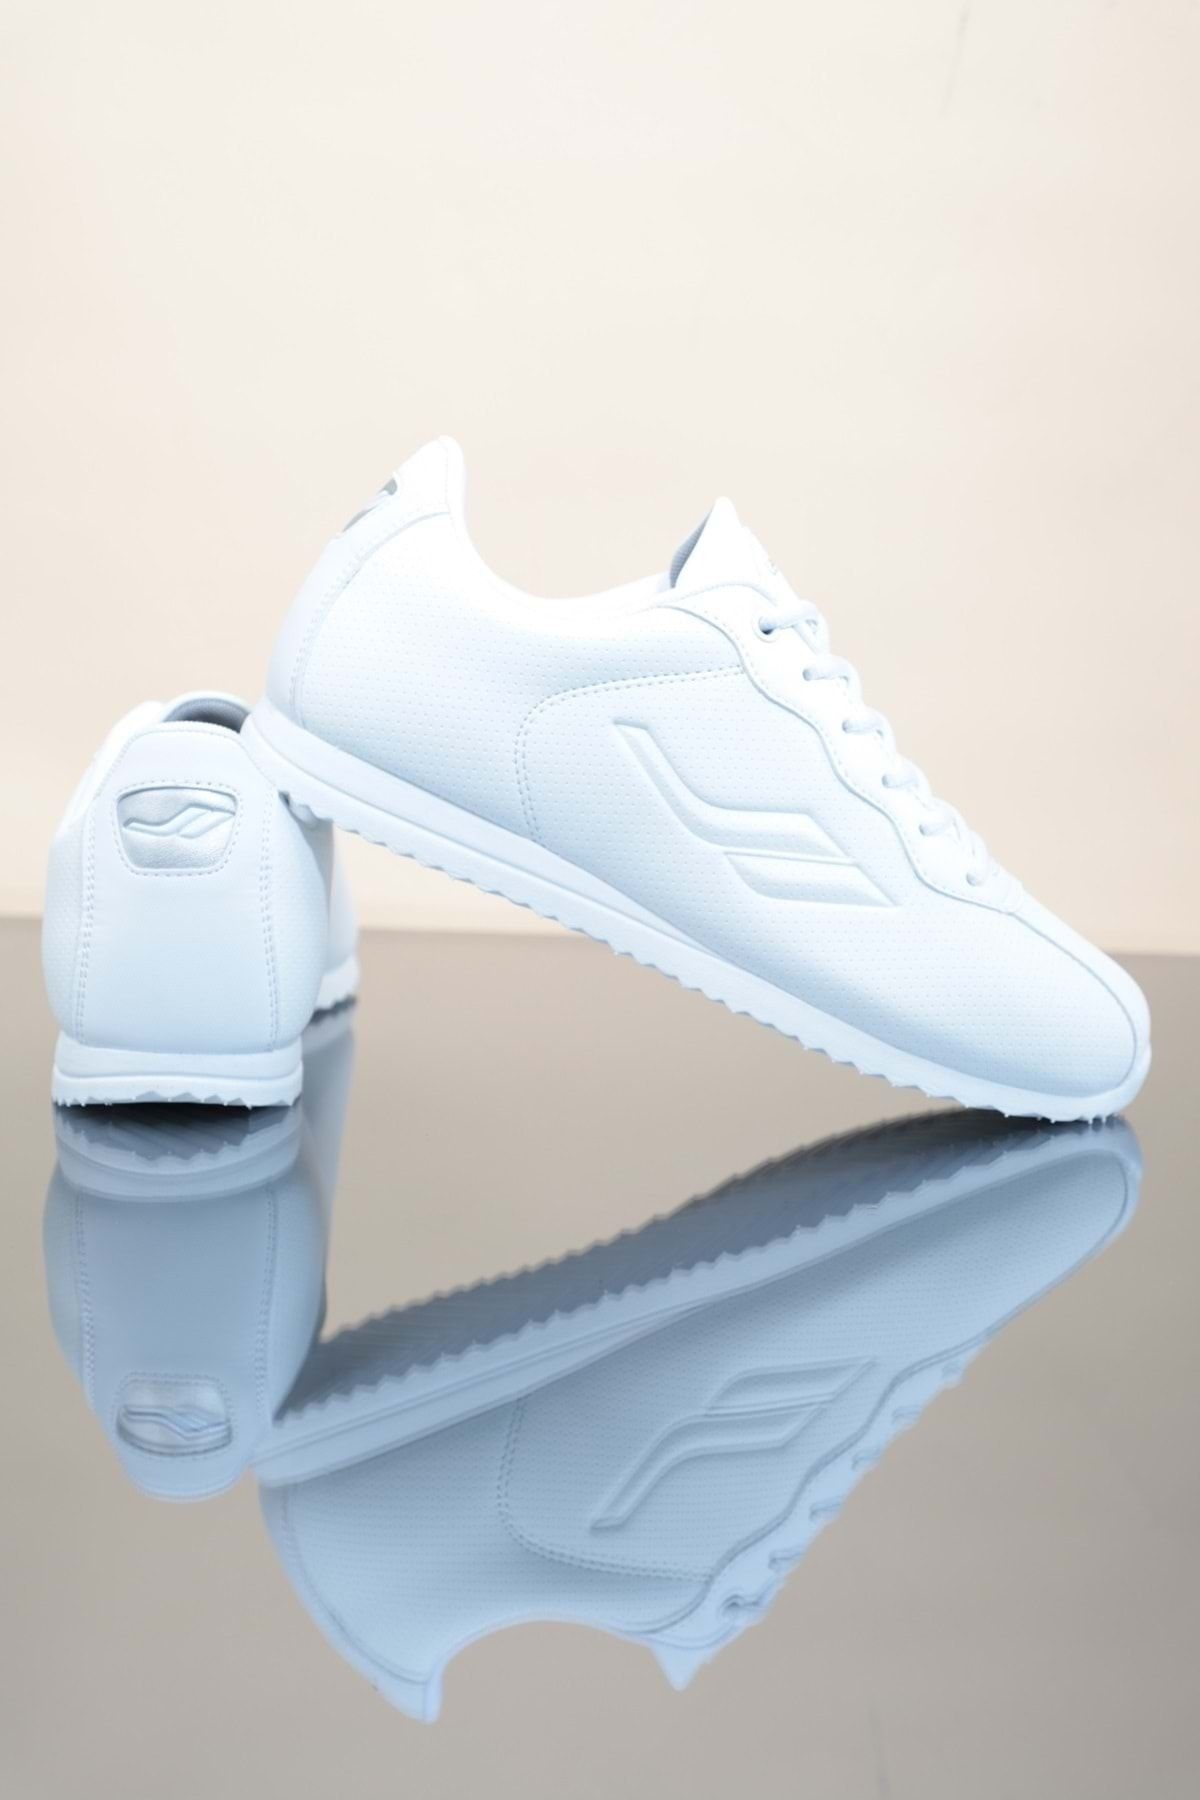 Lescon Beyaz - Konfores 1247-neptun Anatomik Taban Sneakers Ayakkabı